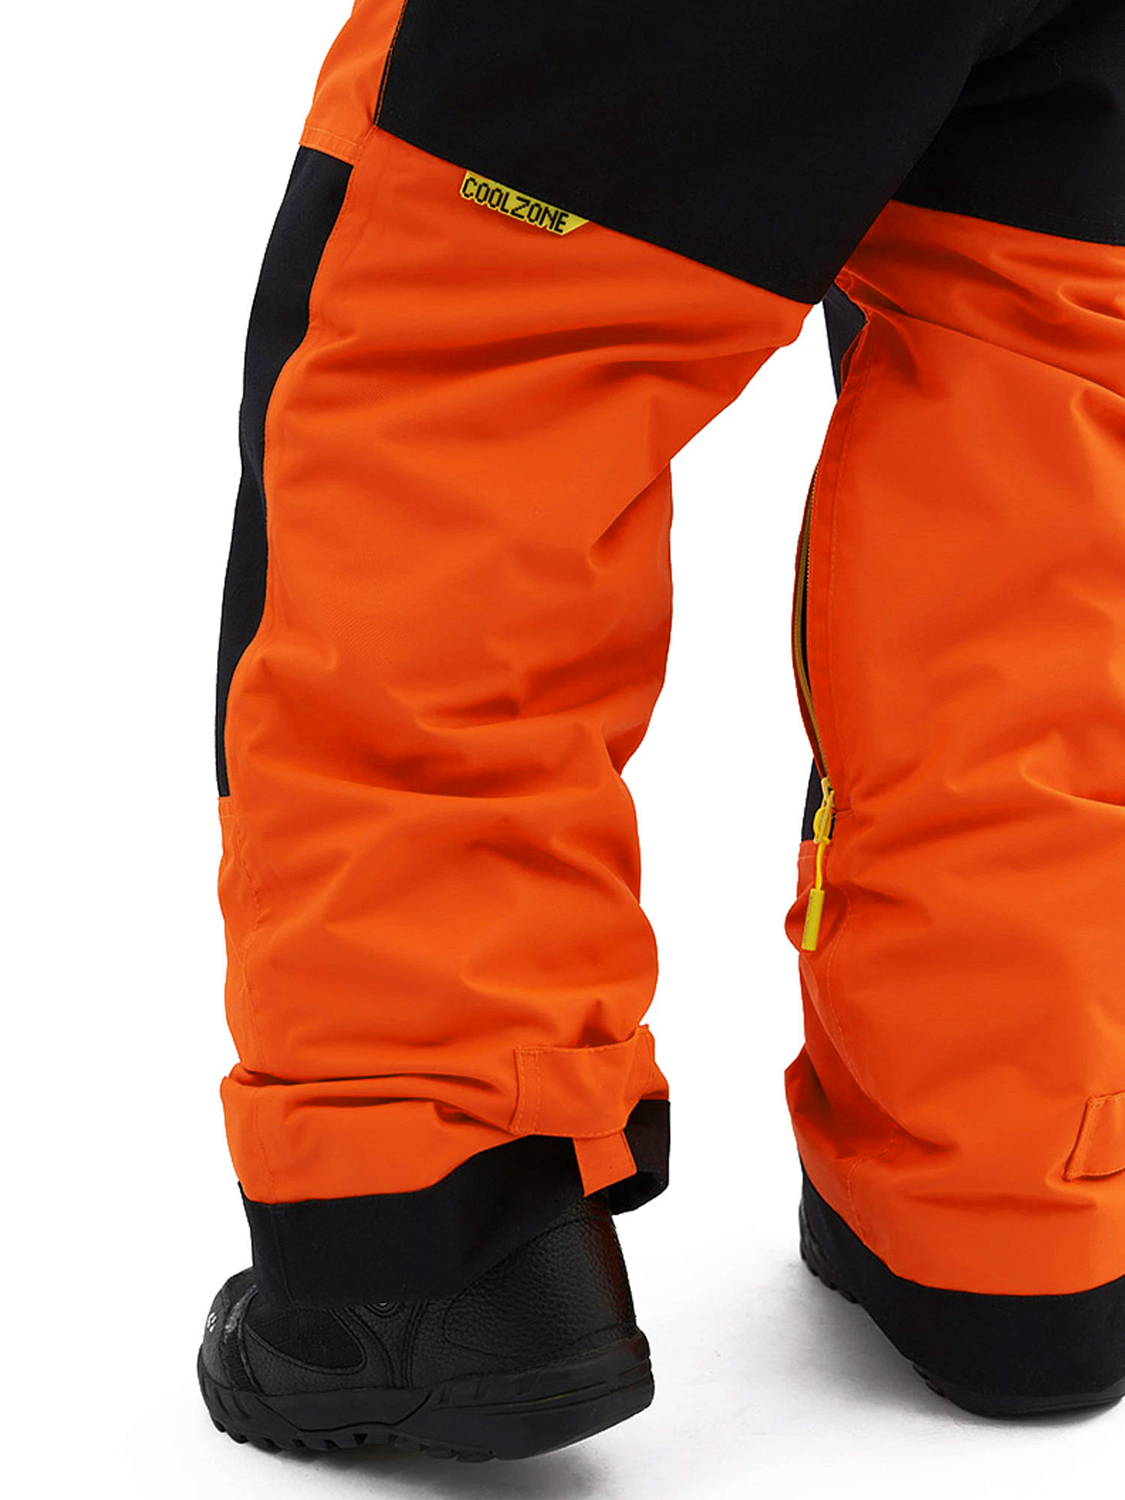 Комбинезон сноубордический детский COOL ZONE Pixel Оранжевый